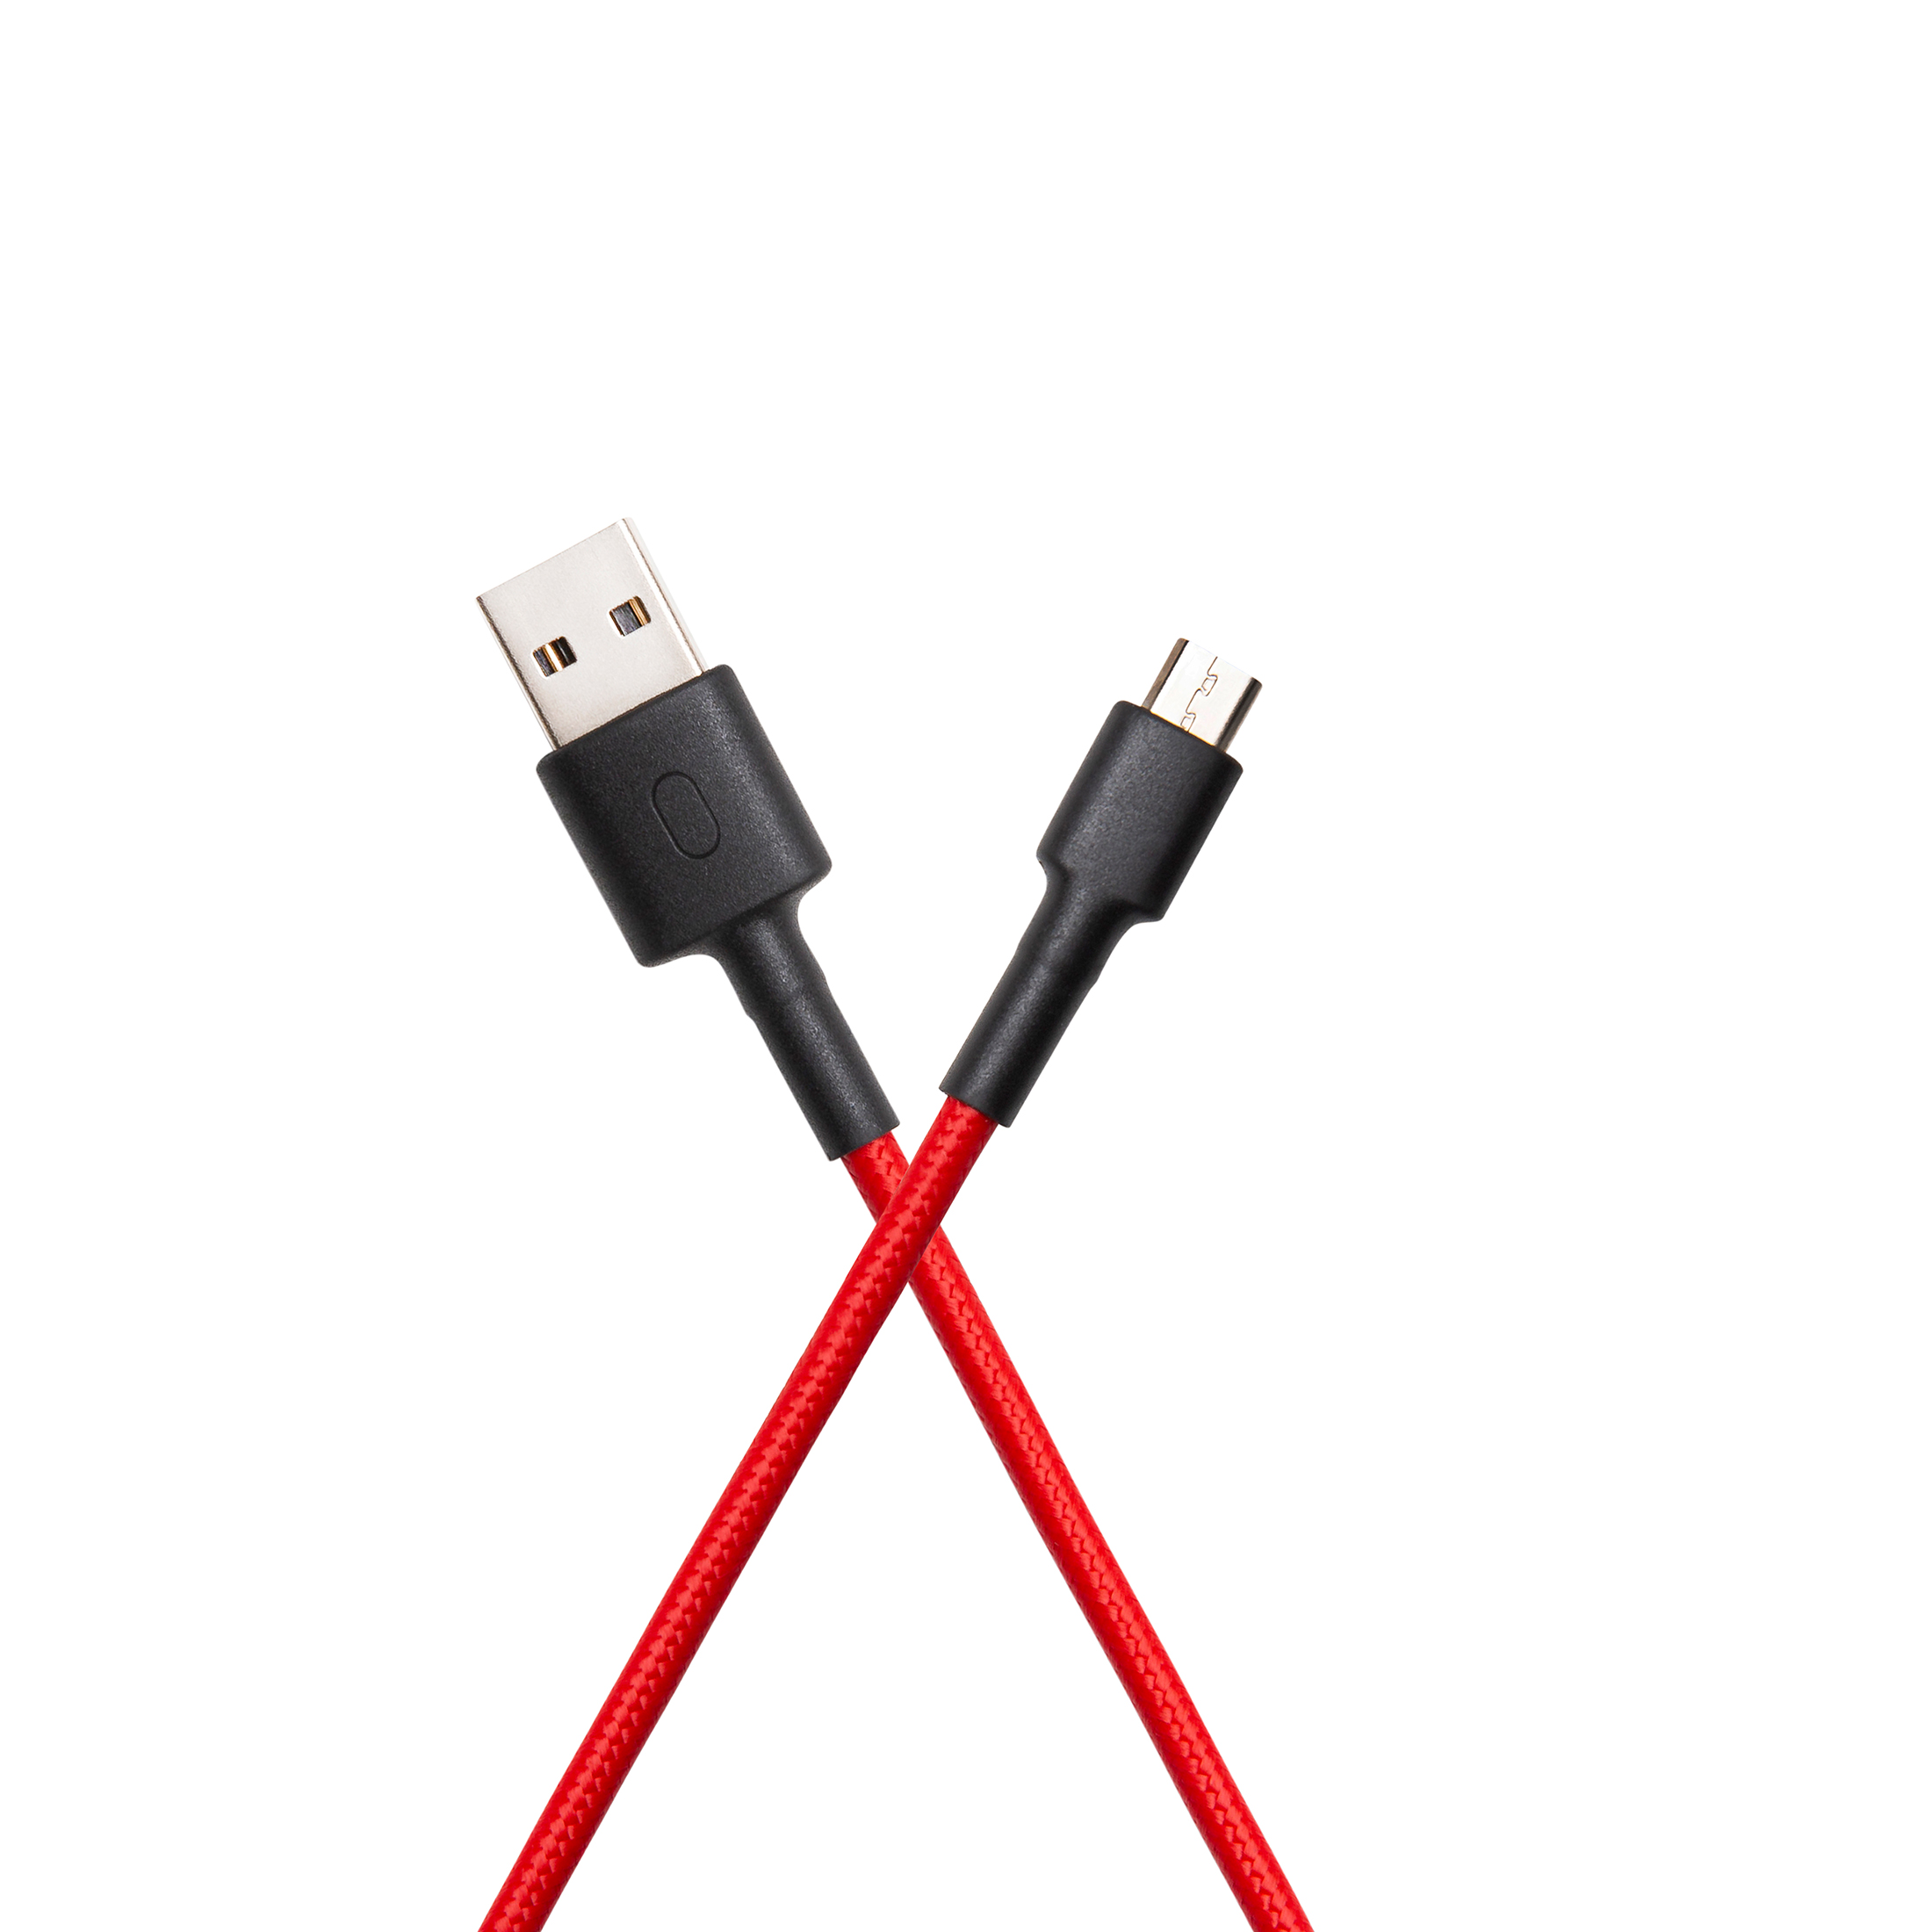 Por qué no Nos vemos Desagradable Mi 2-in-1 USB Power Bank Cable (Micro USB to Type C) 30cm]Product Info - Mi  India